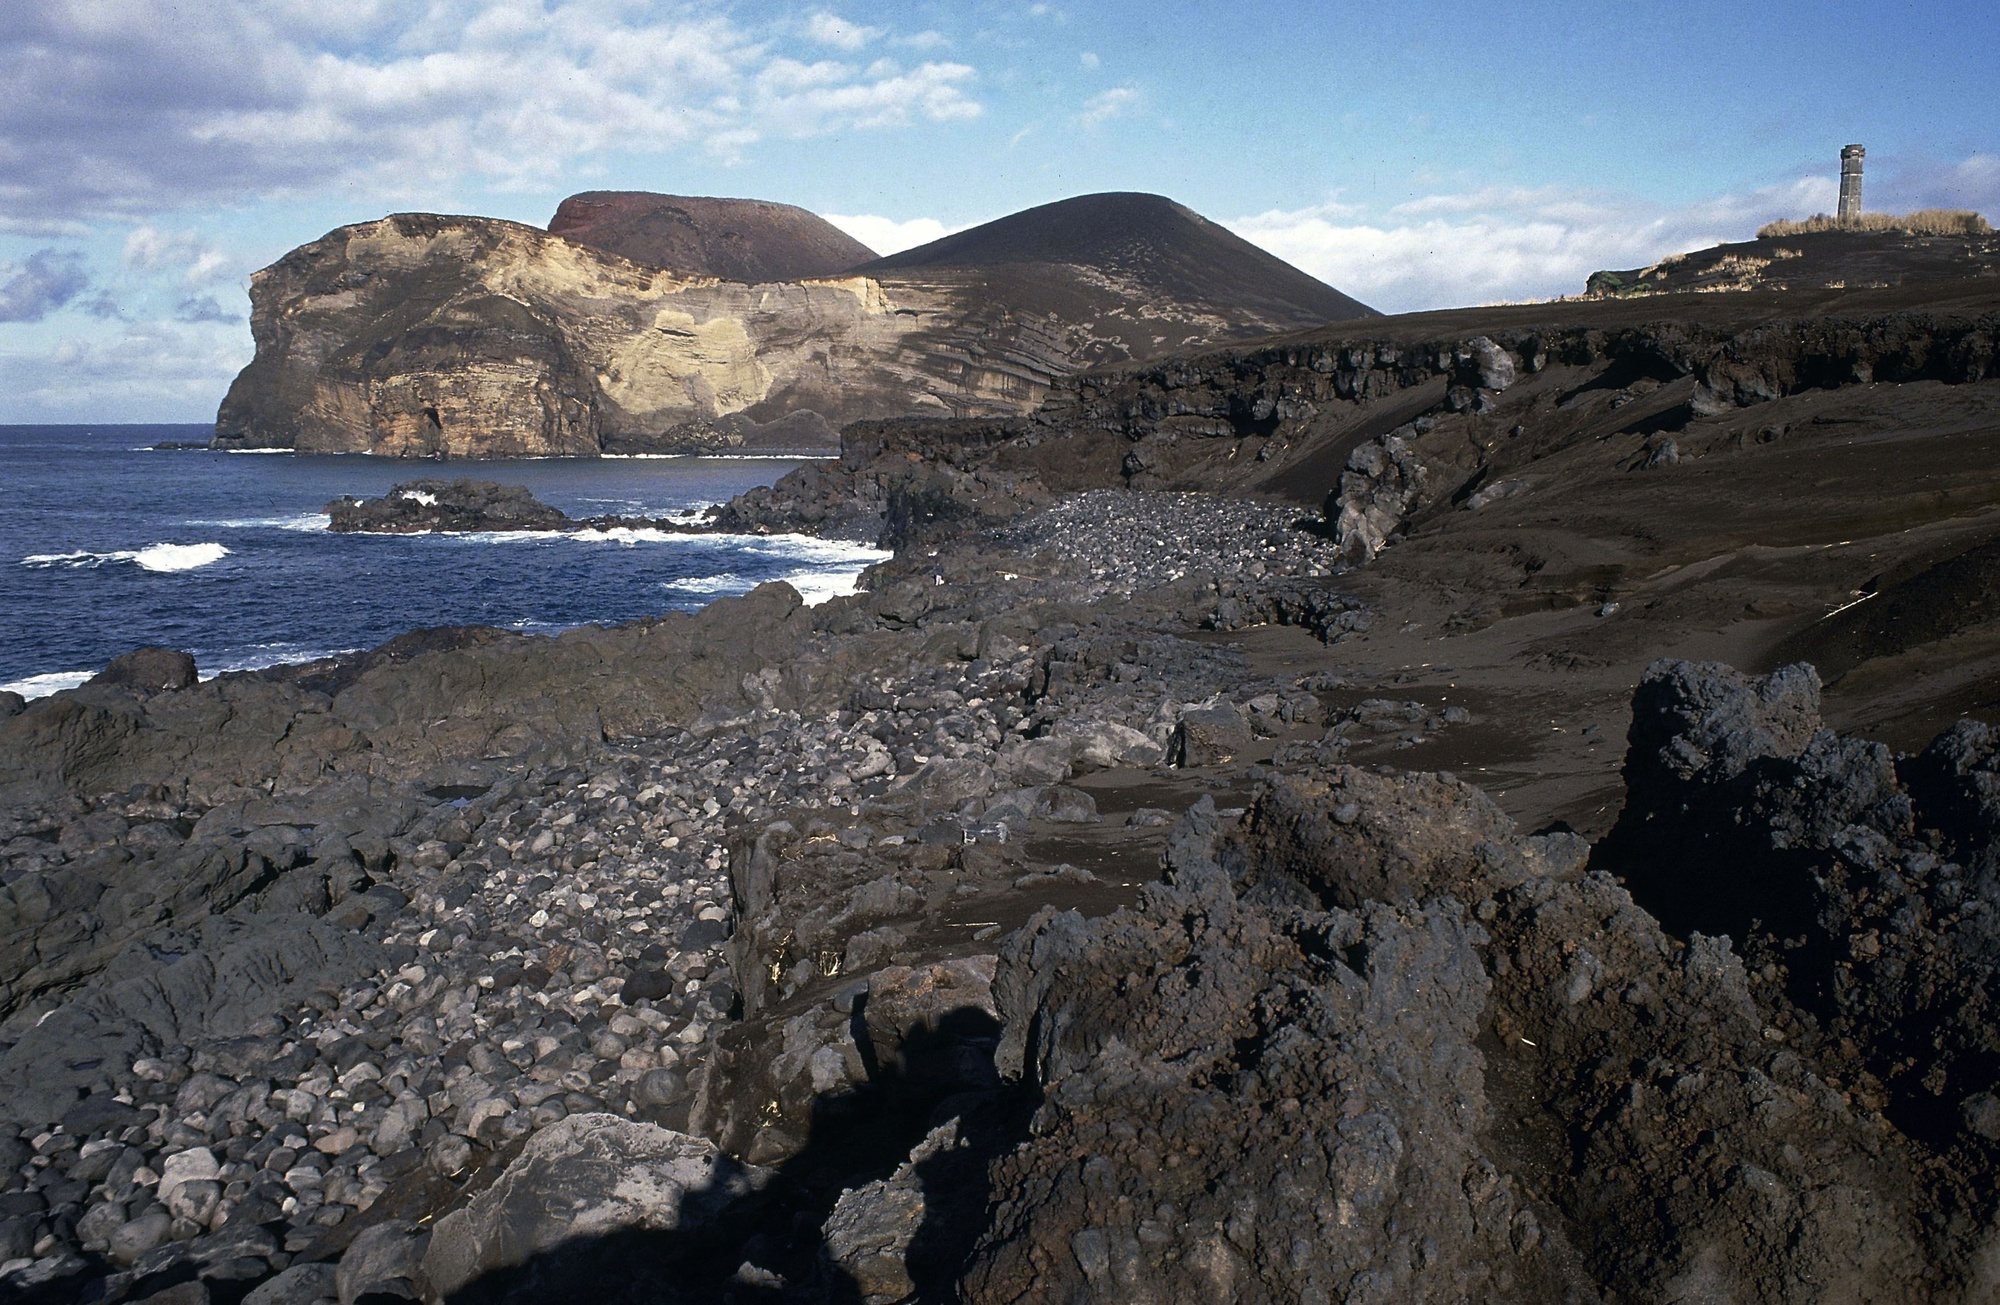 Vulcão dos Capelinhos, na Ilha do Faial, Açores, a 9 de Dezembro de 1990. A erupção vulcânica dos Capelinhos iniciou-se em Setembro de 1957 e durante um ano e um mês a sua actividade não cessou. O vulcão dos Capelinhos ligou-se ao Faial através de um braço de magma, acrescentado-lhe cerca de 2,4 Km2 de superfície.Manuel Moura / Lusa